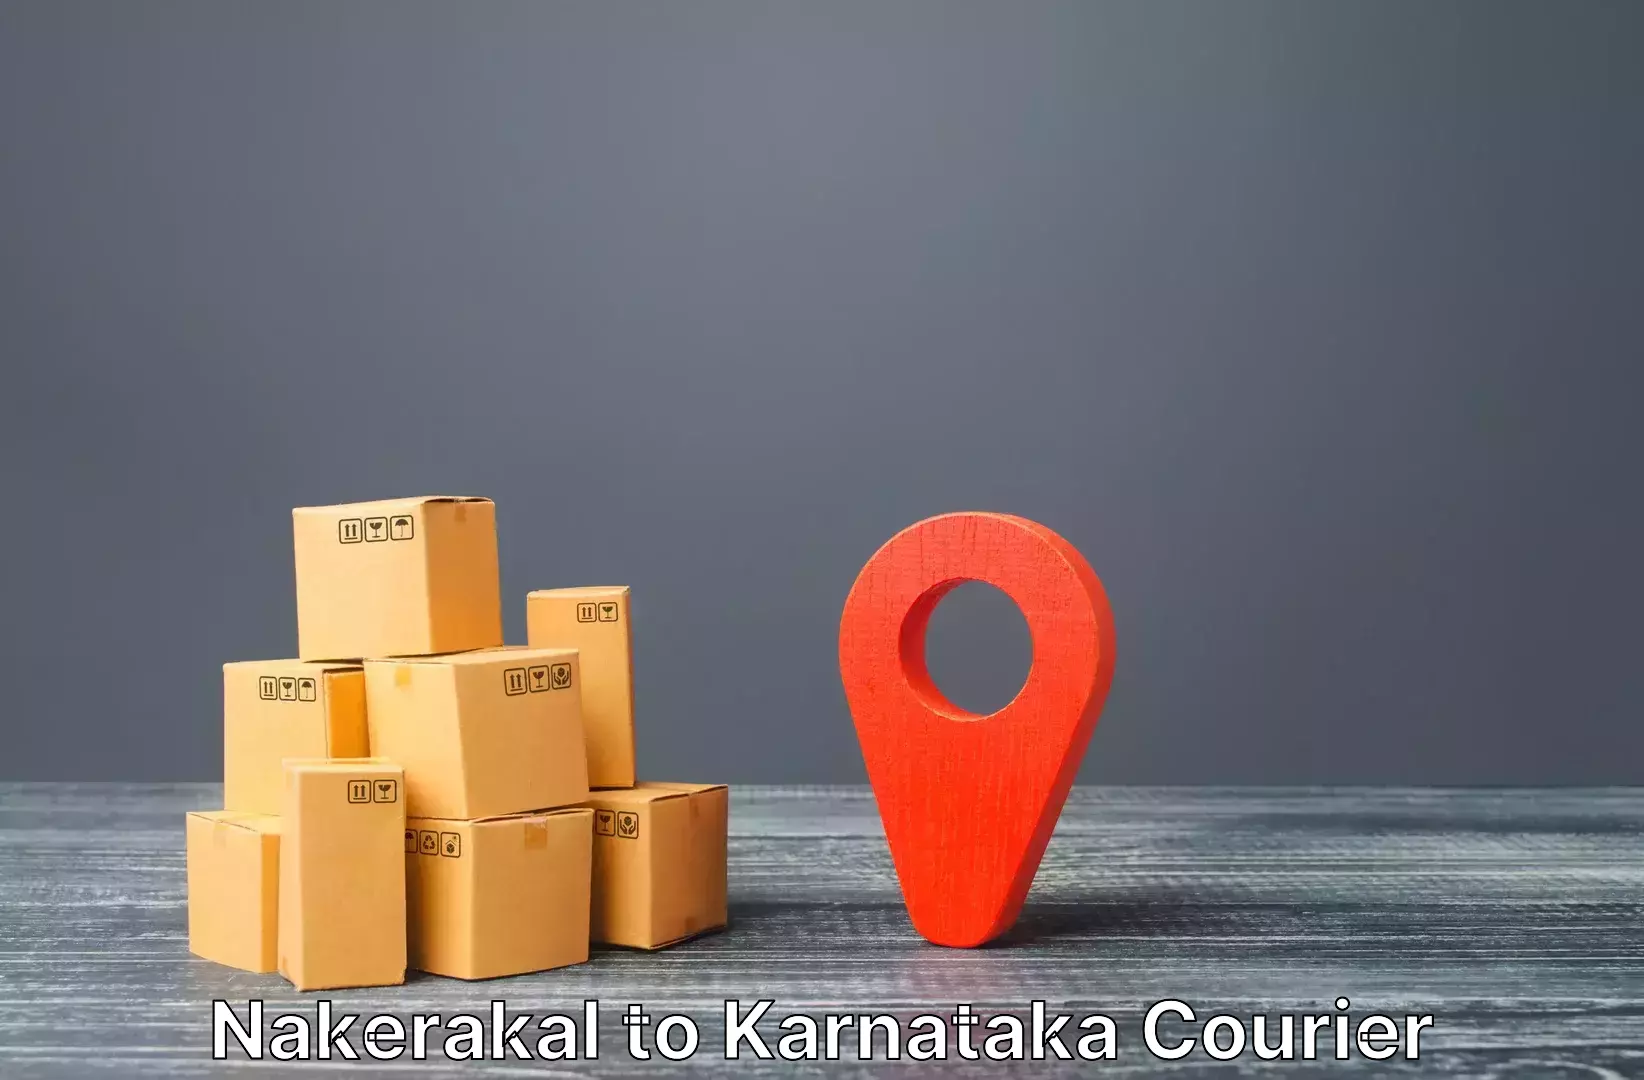 Hassle-free luggage shipping Nakerakal to Mangalore Port